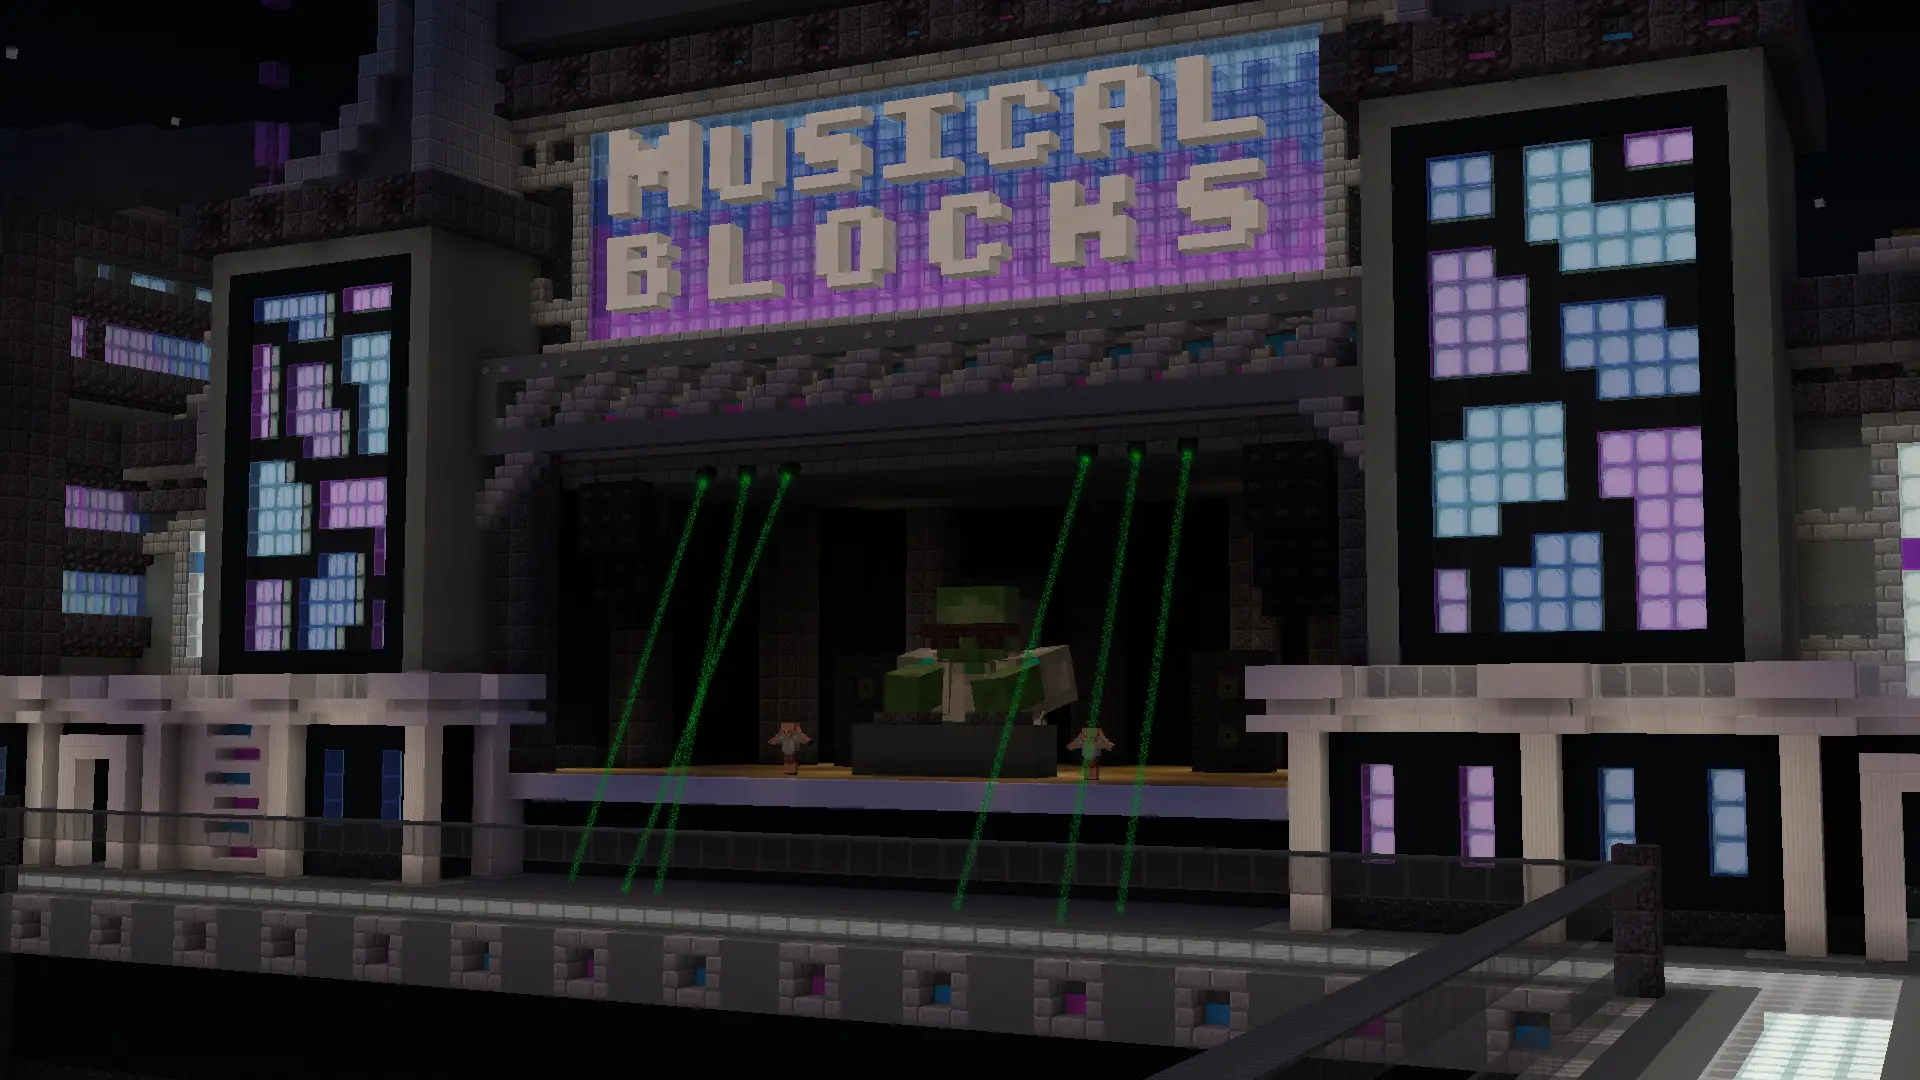 Musical blocks